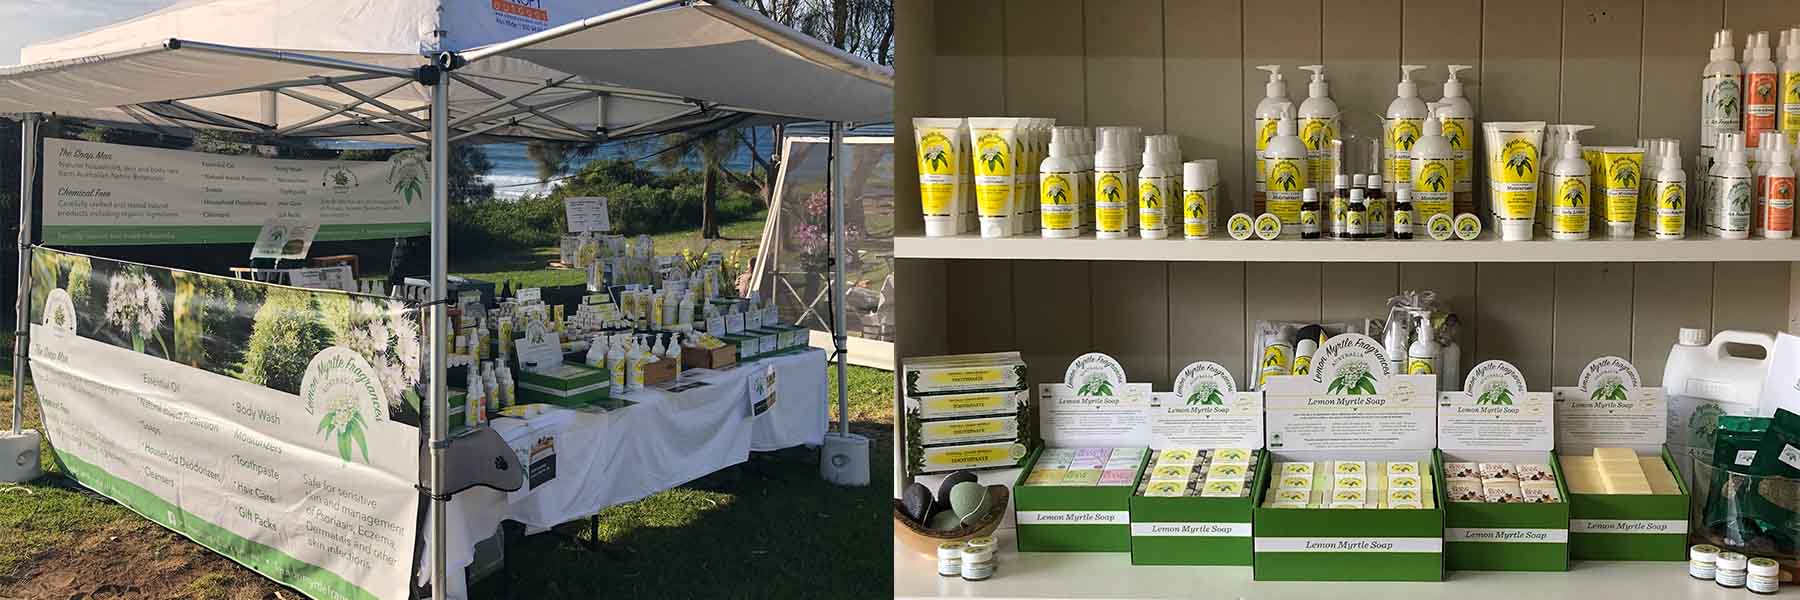 lemon Myrtle products displayed at market